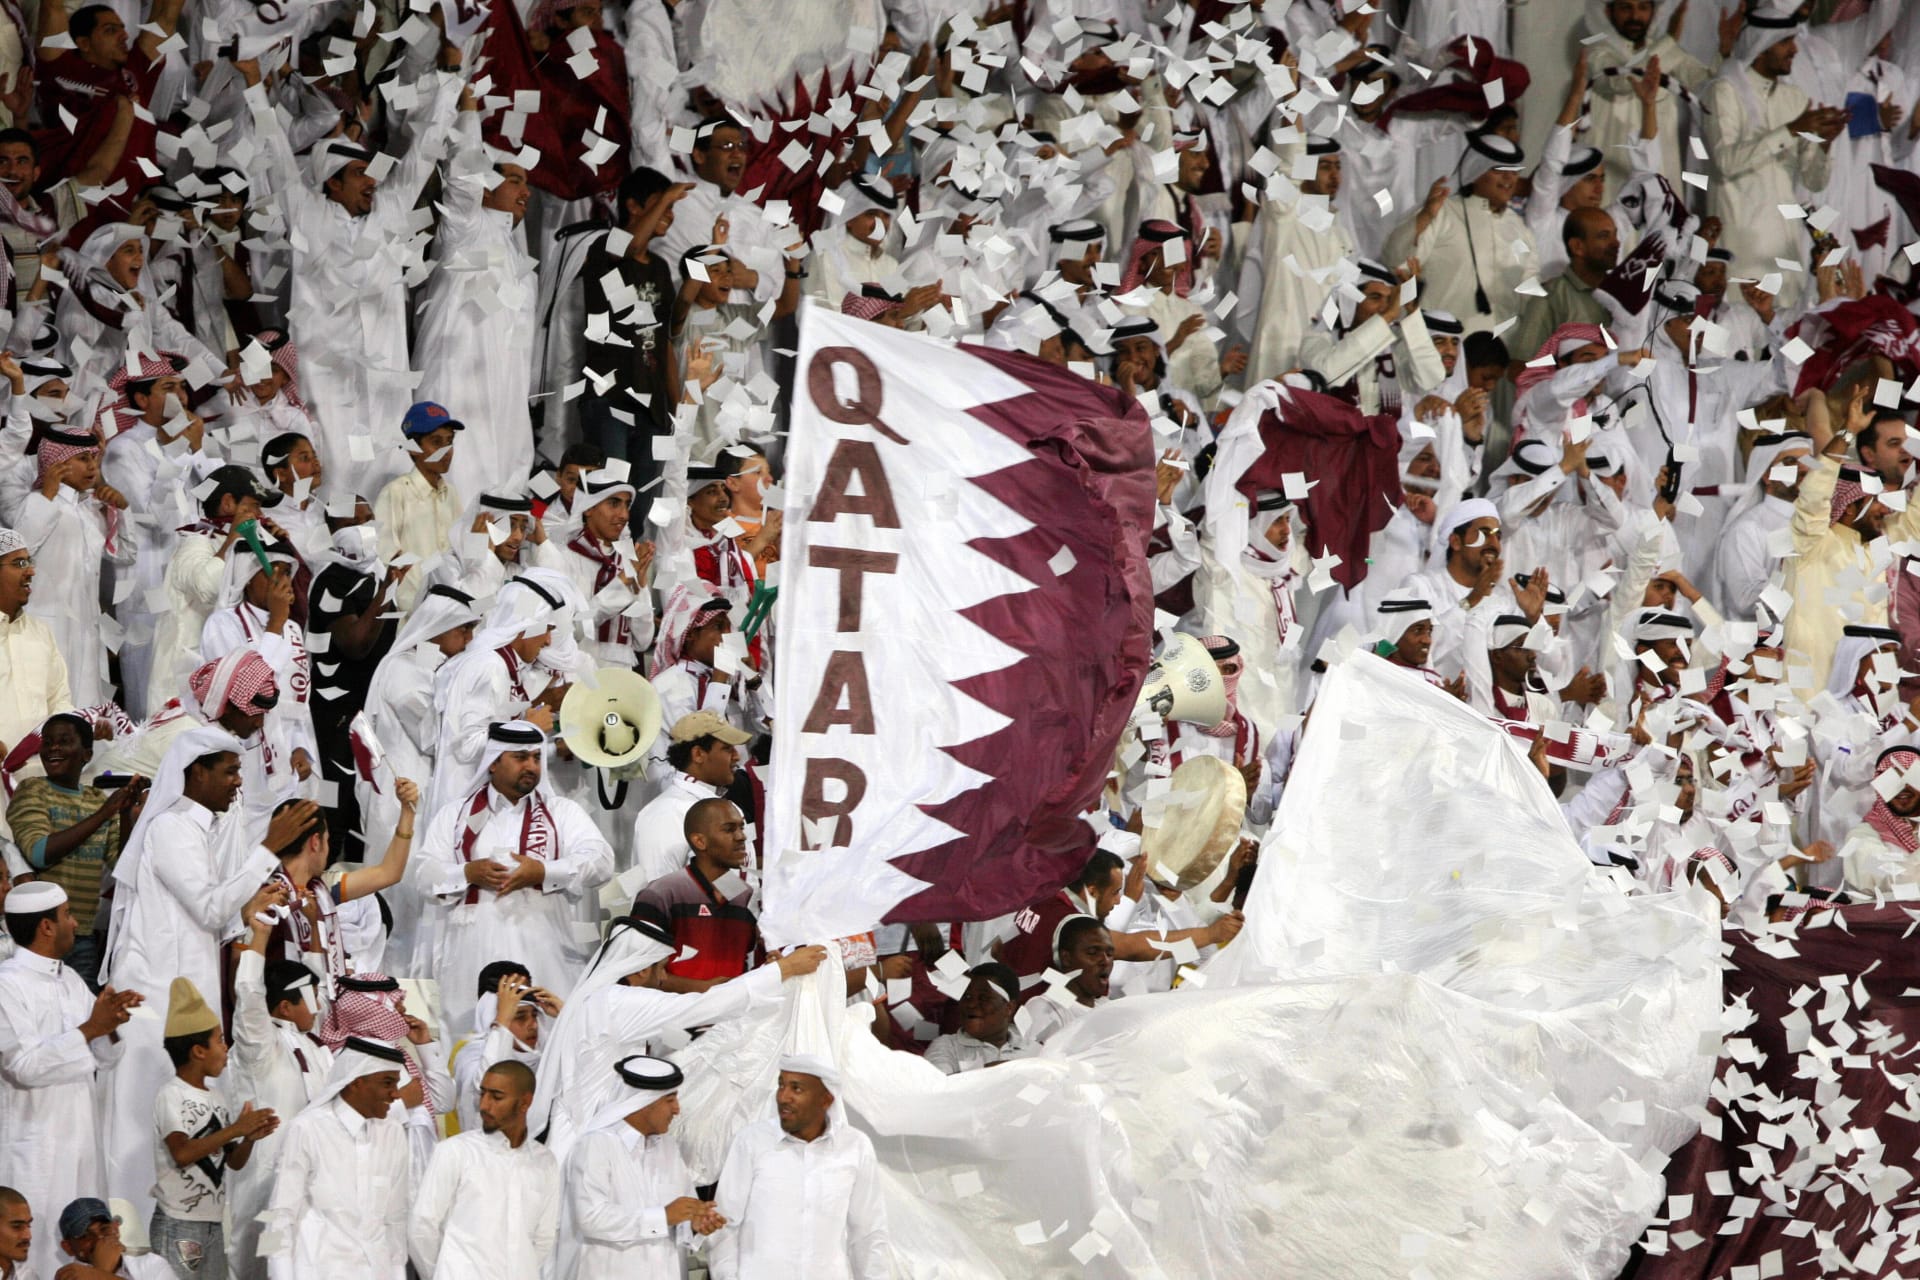 فوز منتخب قطر ببرونزية كأس العرب بعد فوزه بركلات الترجيح على منافسه المصري